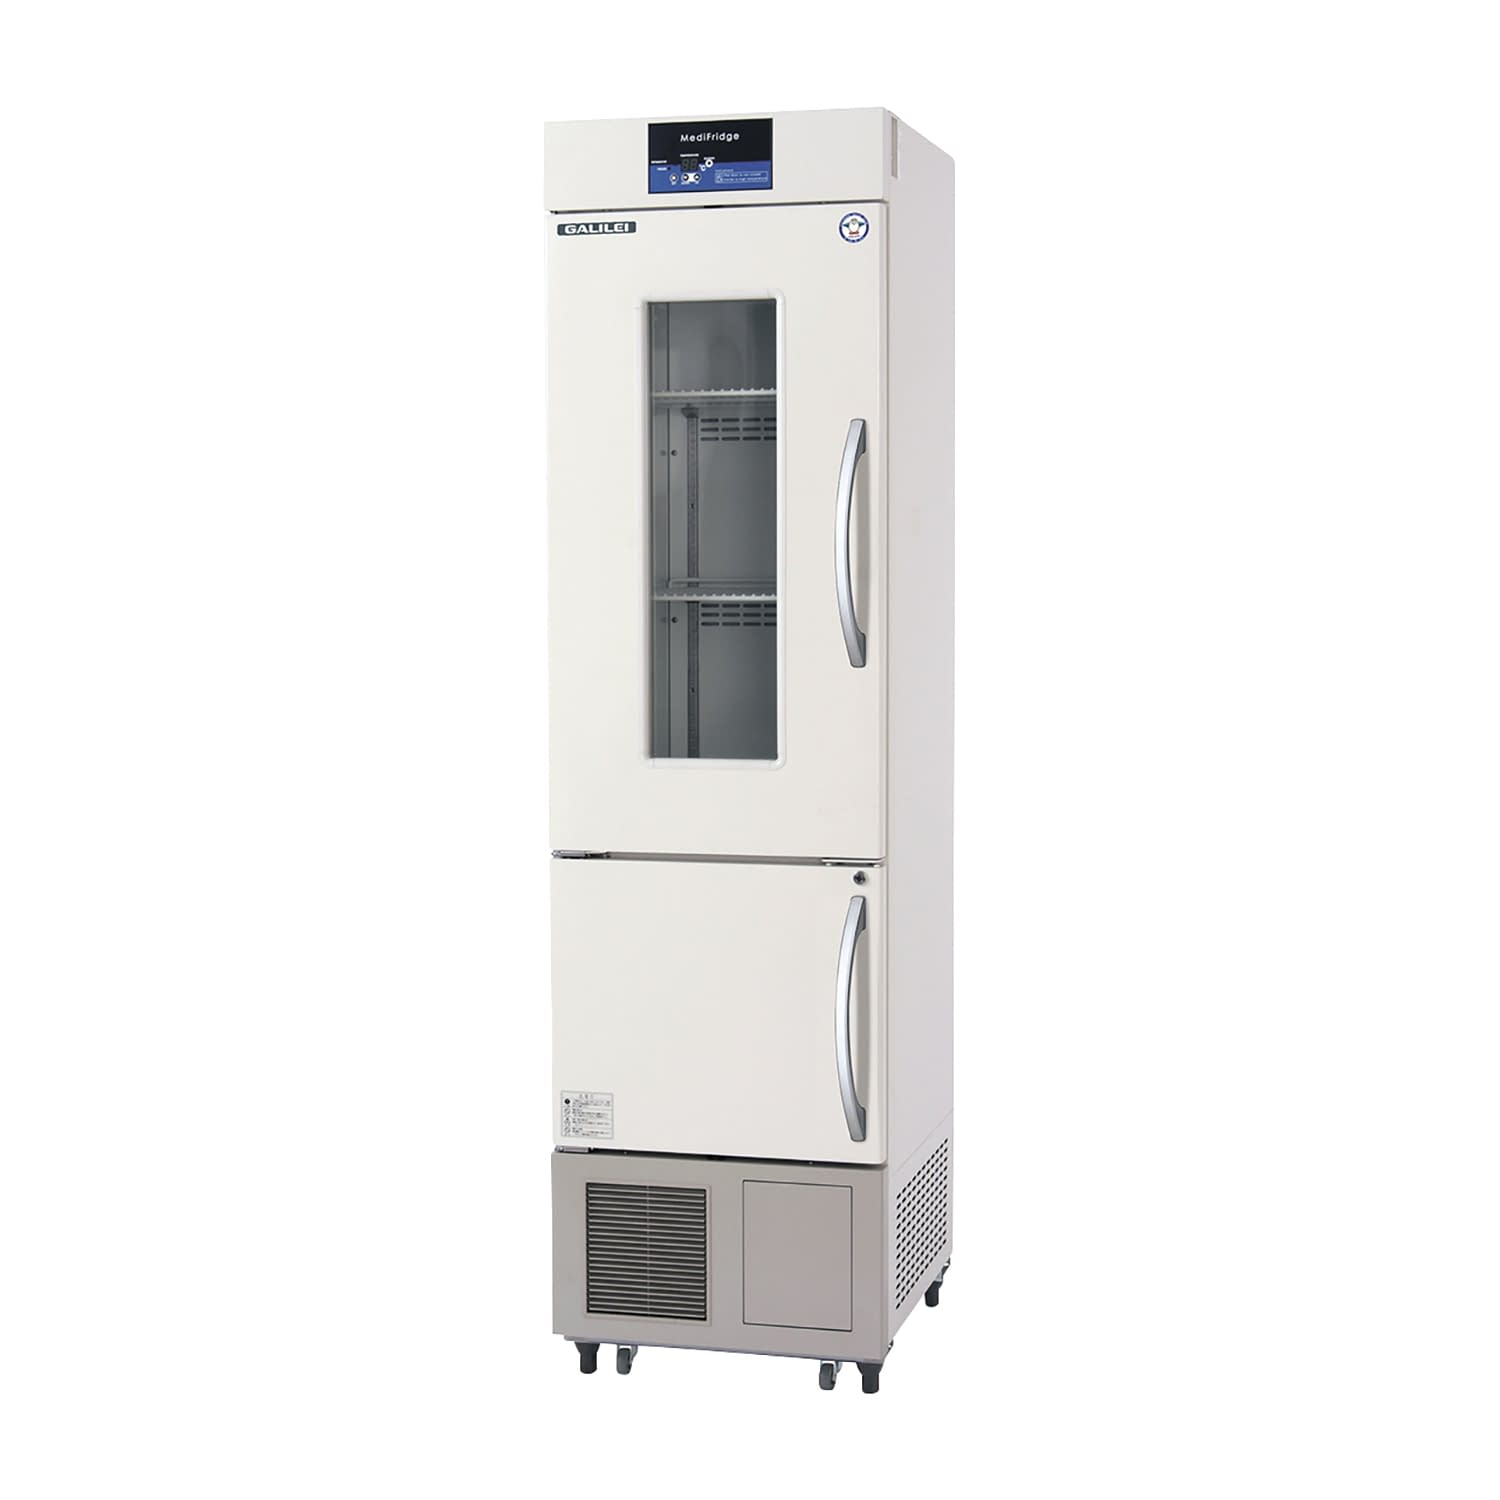 薬用冷凍冷蔵庫 FMS-F155GSX(62／174L) 1台 フクシマガリレイ アイボリー(標準色) カラーイエロー25-5515-0005 保冷庫 検査室 薬用保冷庫